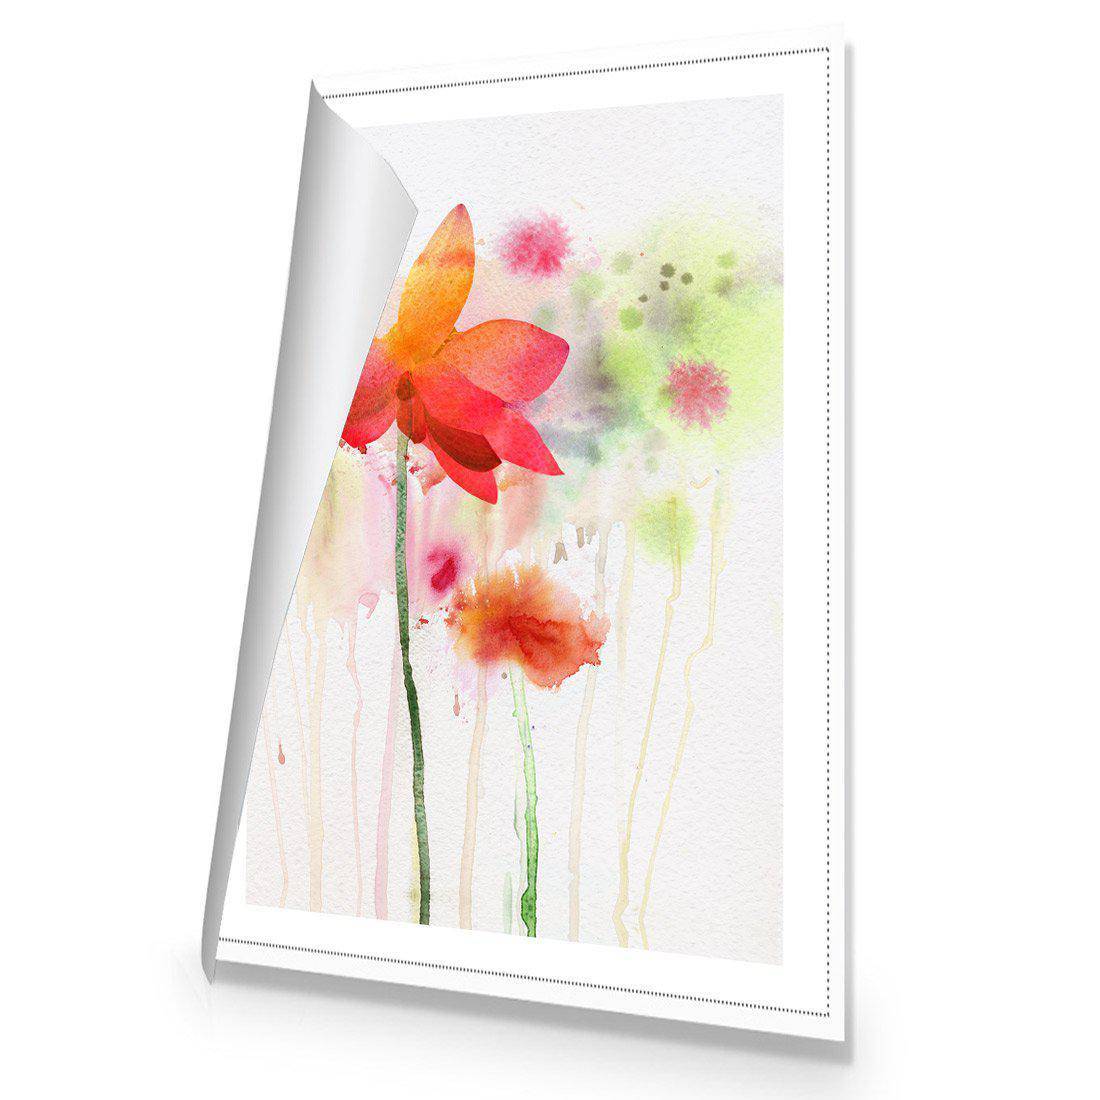 Spring Rain Canvas Art-Canvas-Wall Art Designs-45x30cm-Rolled Canvas-Wall Art Designs